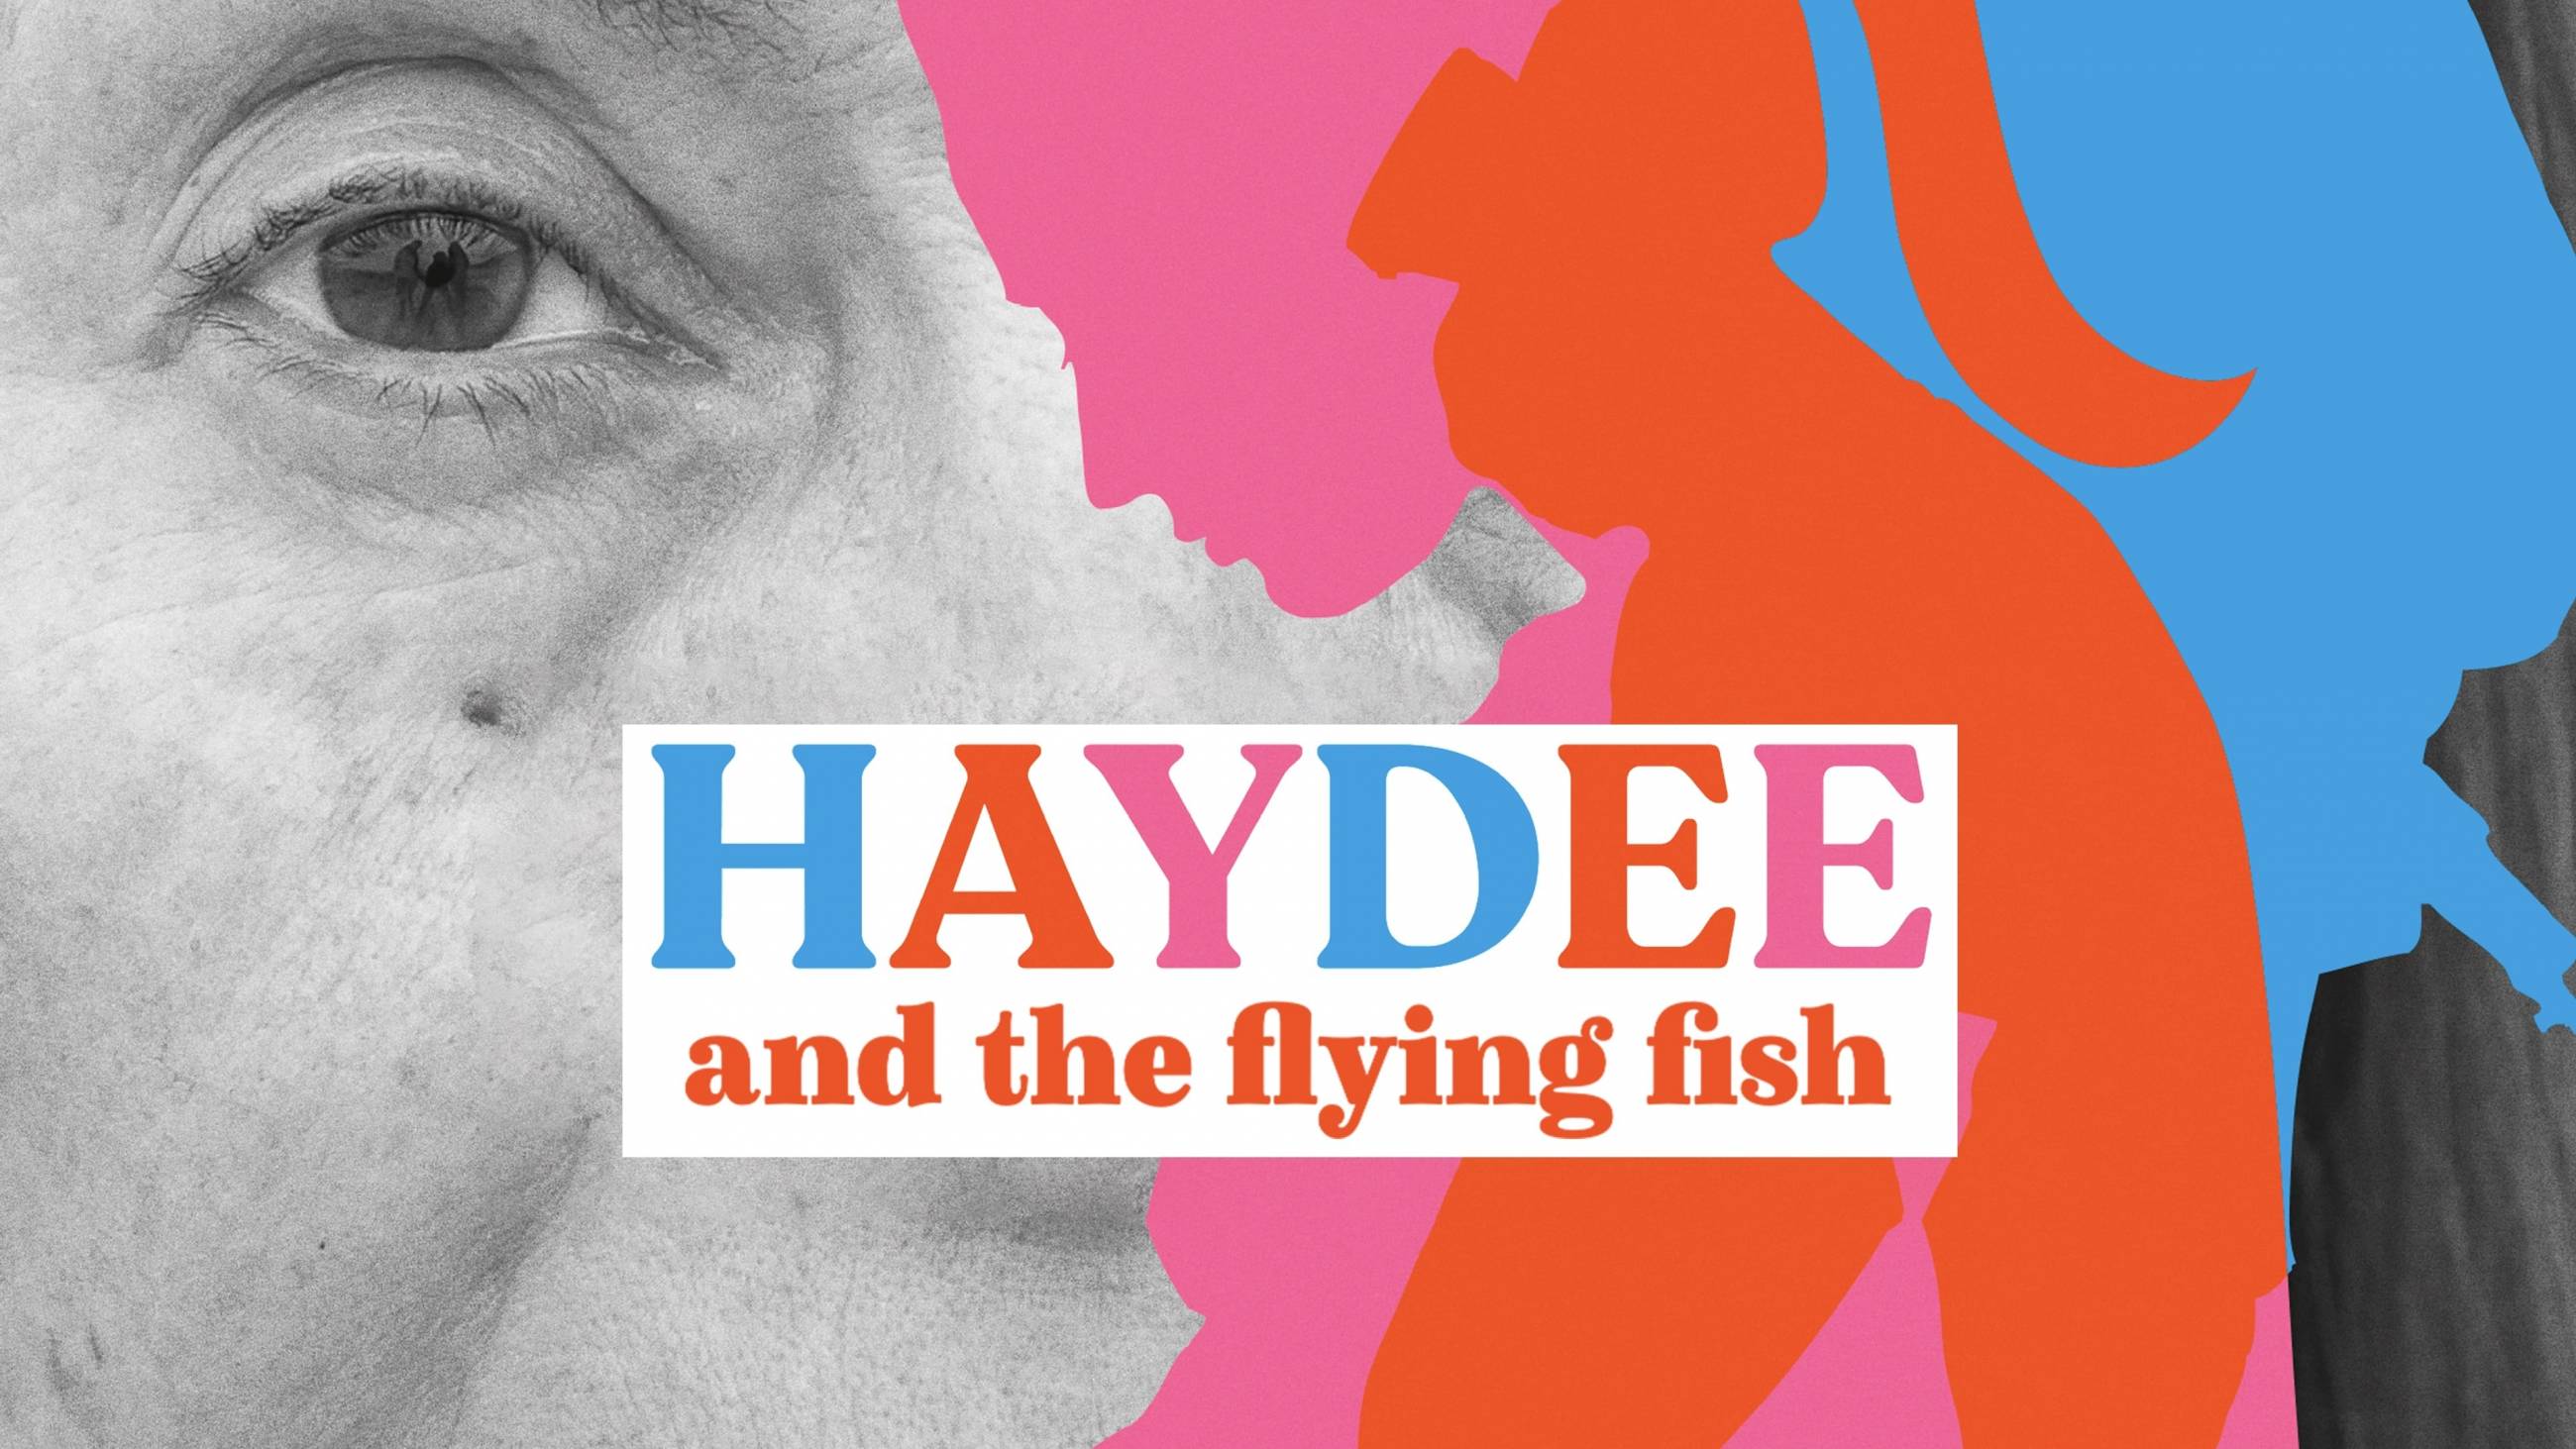 Cubierta de Haydee y el pez volador